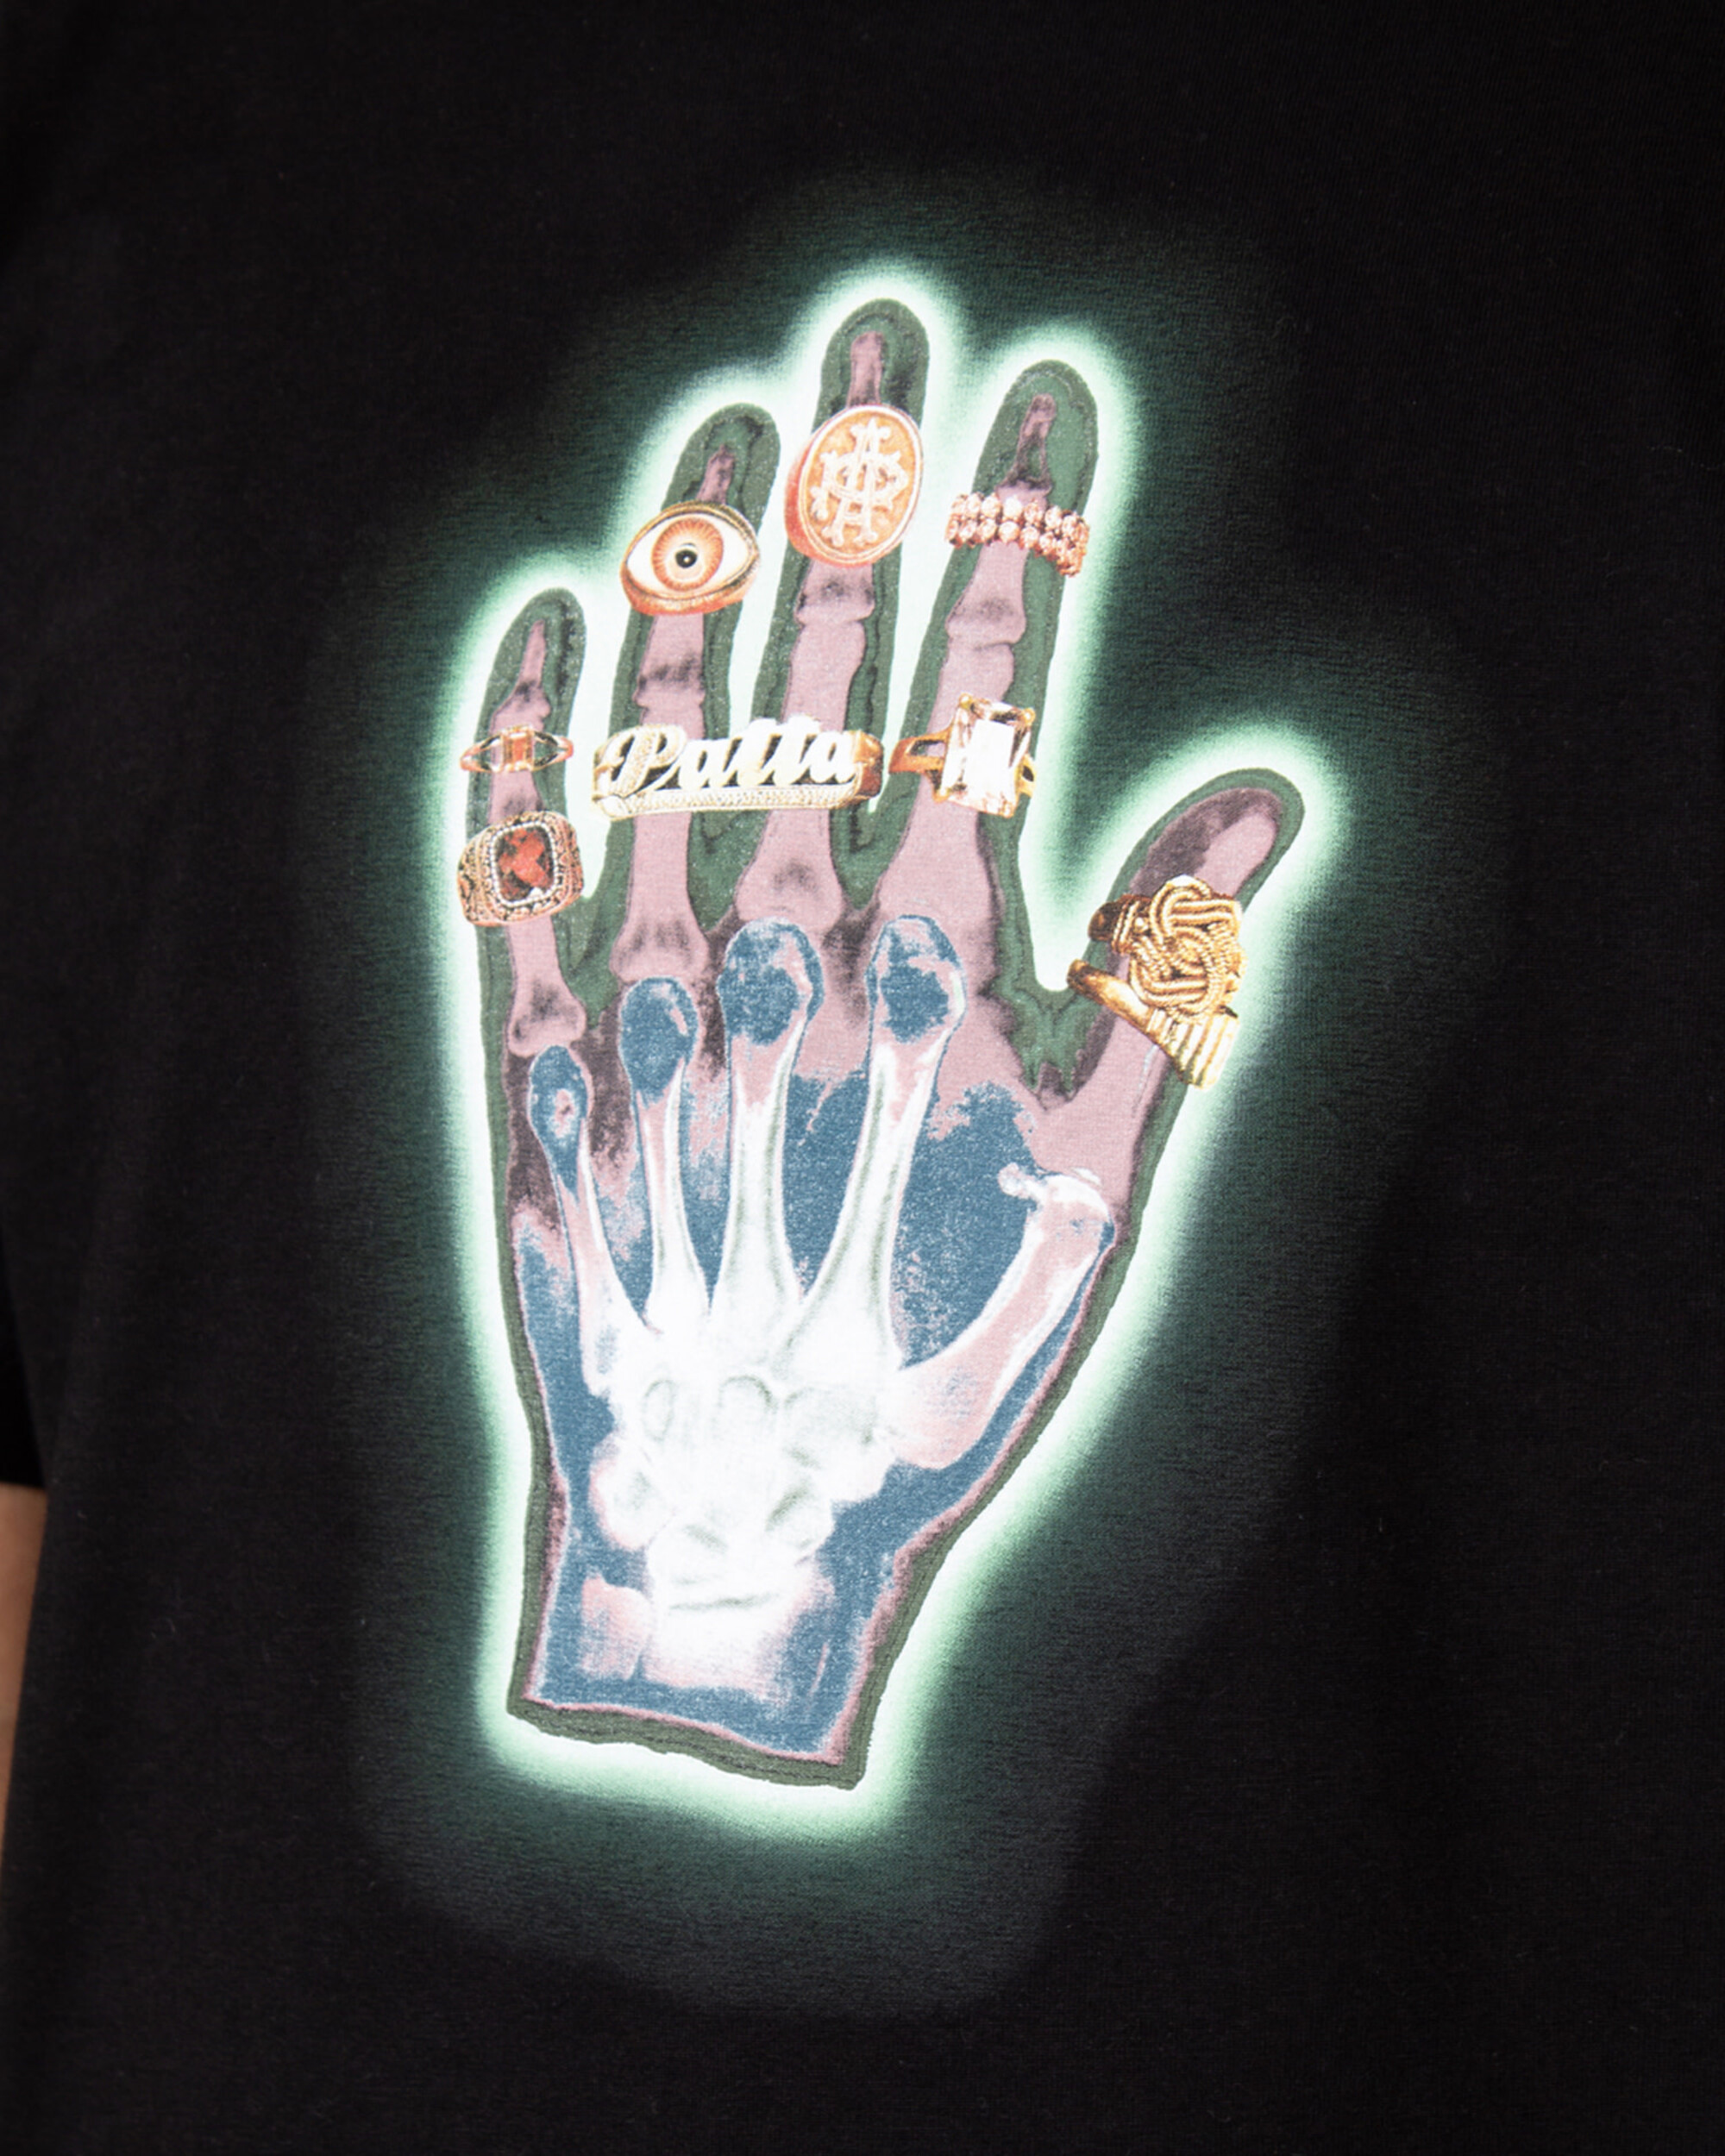 Patta Healing Hands T-Shirt - Black